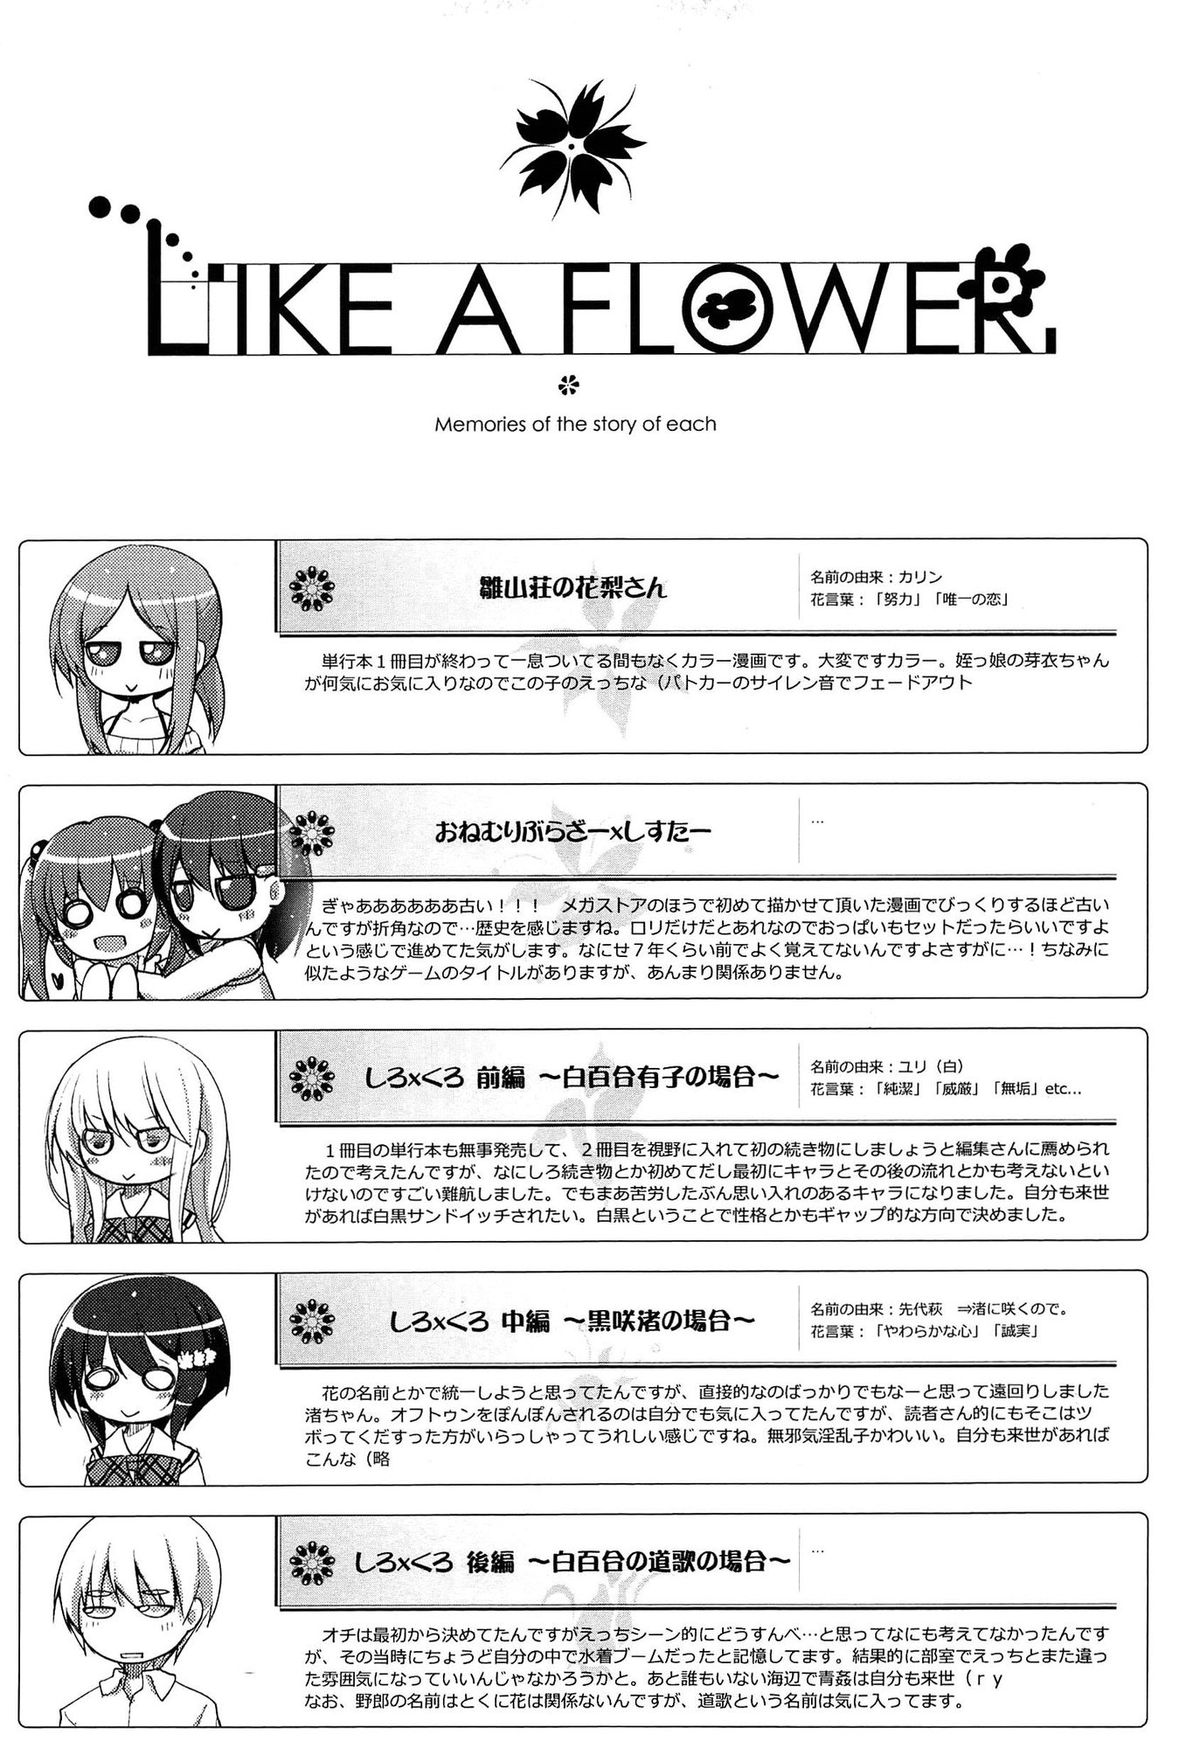 [赤人] LIKE A FLOWER